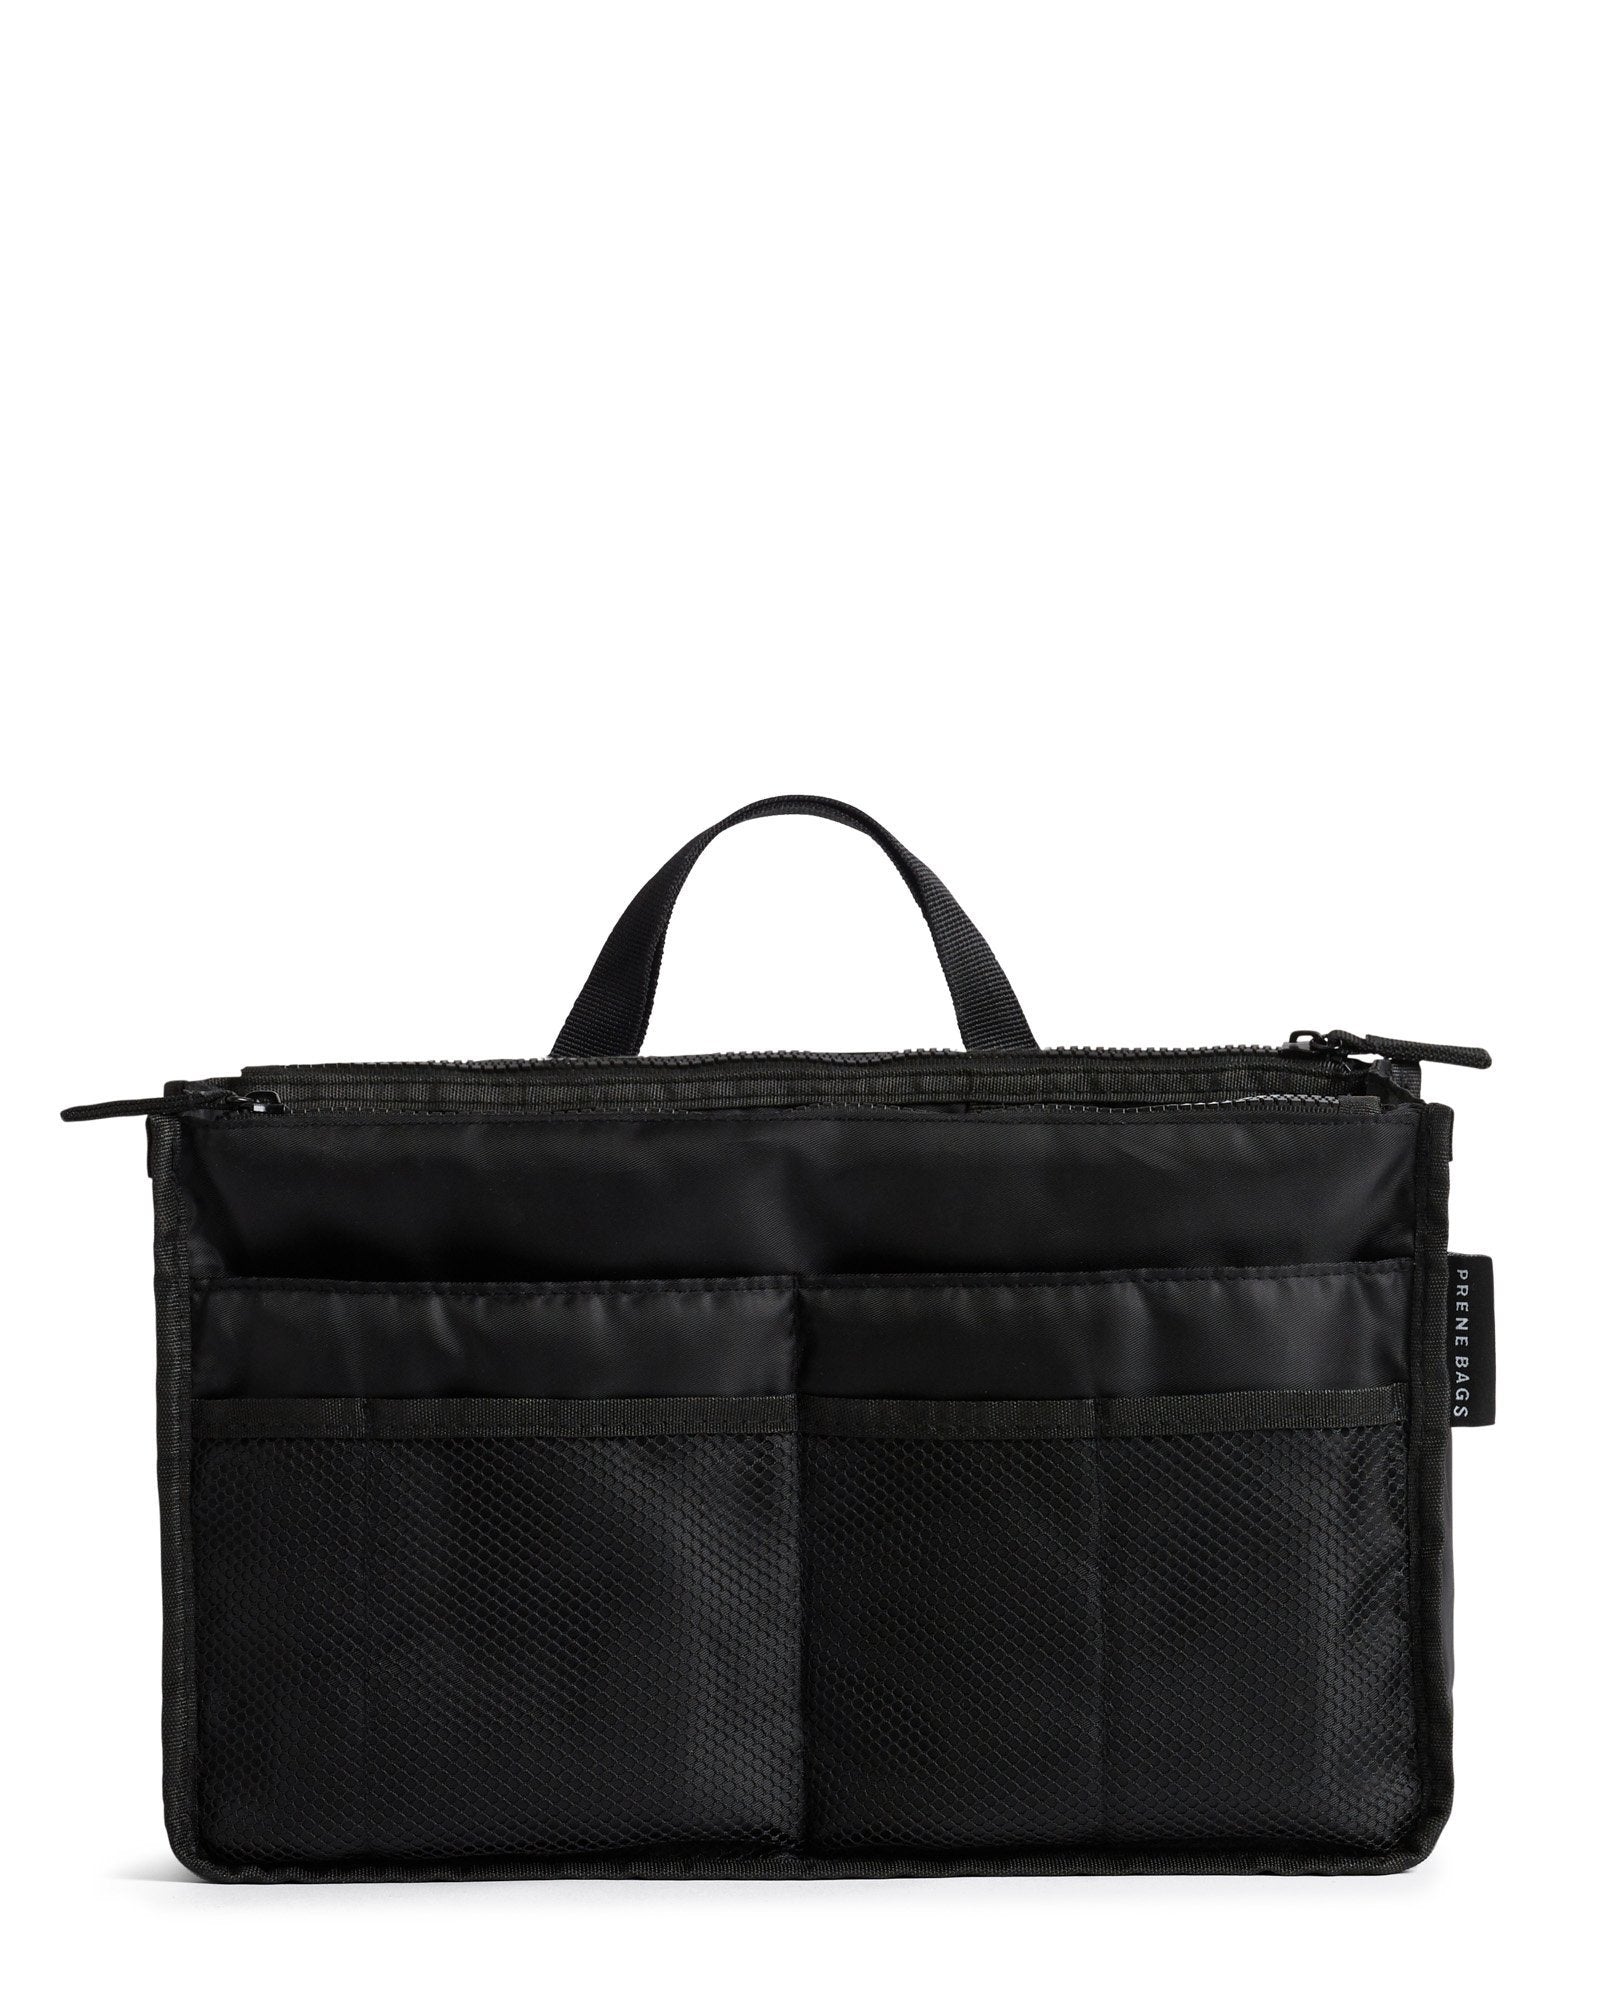 Bag Organizer / Organiser Insert (BLACK)